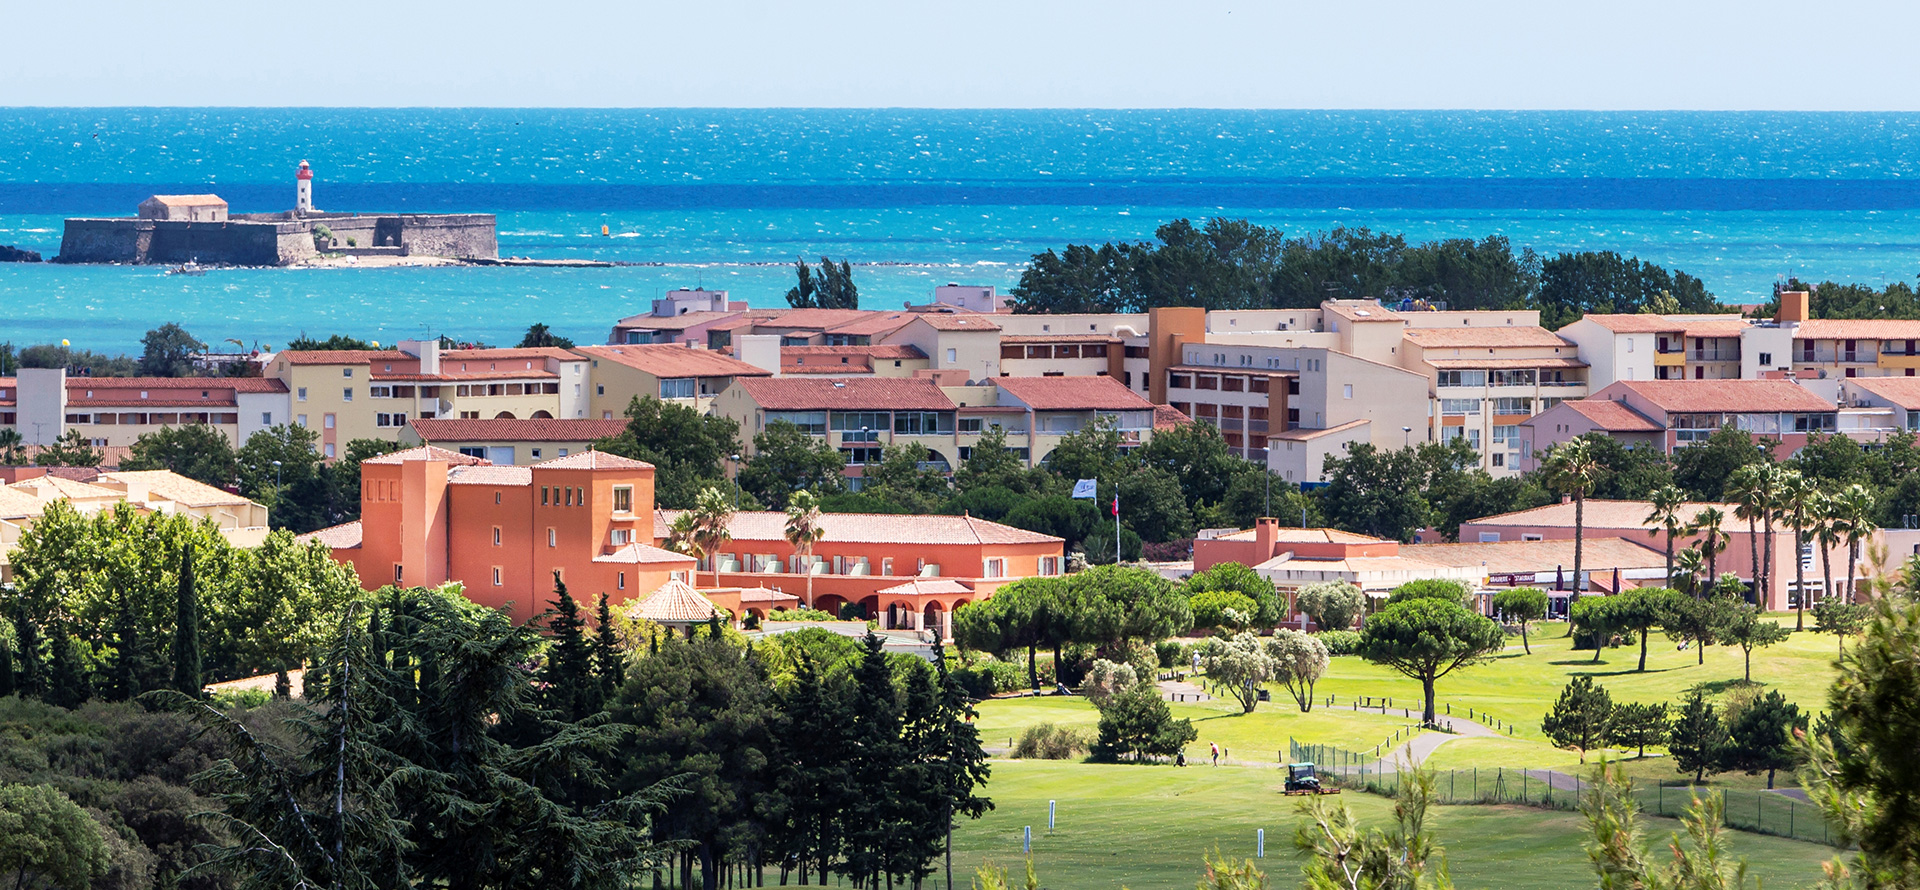 Vue générale du Palmyra Golf hôtel 4 étoiles situé en bordure du Golf International du Cap d’Agde